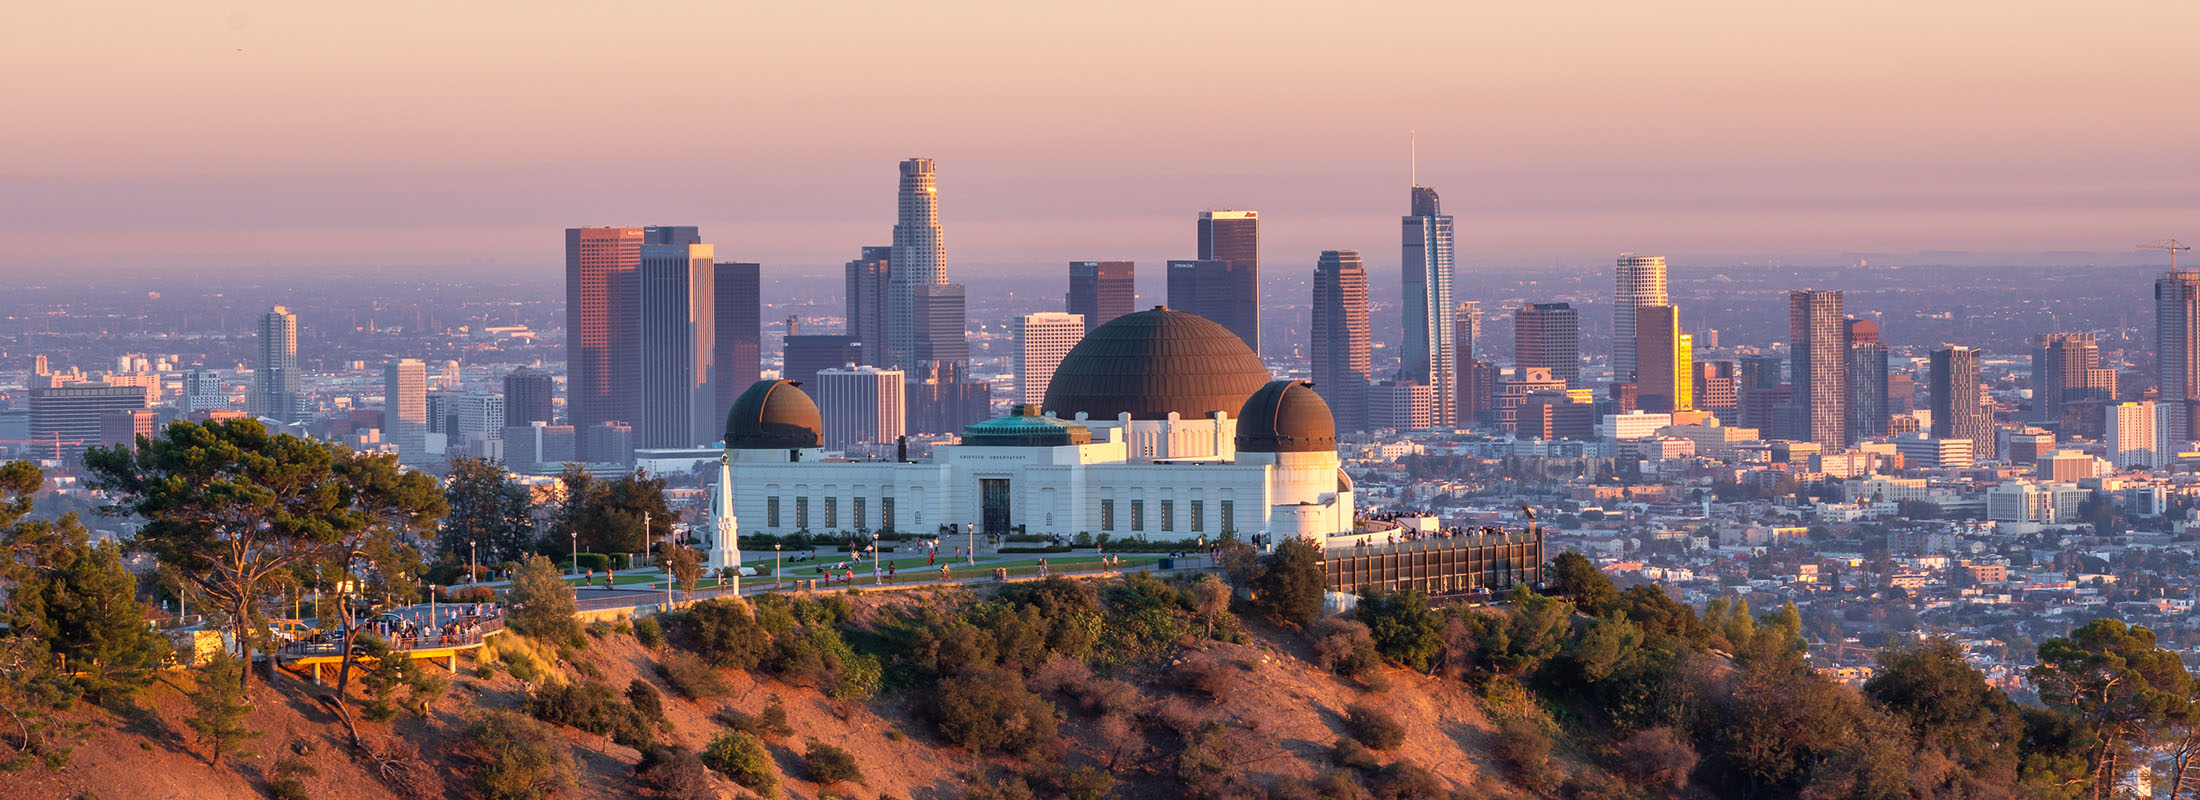 Vista del horizonte de Los Angeles desde unas colinas cercanas